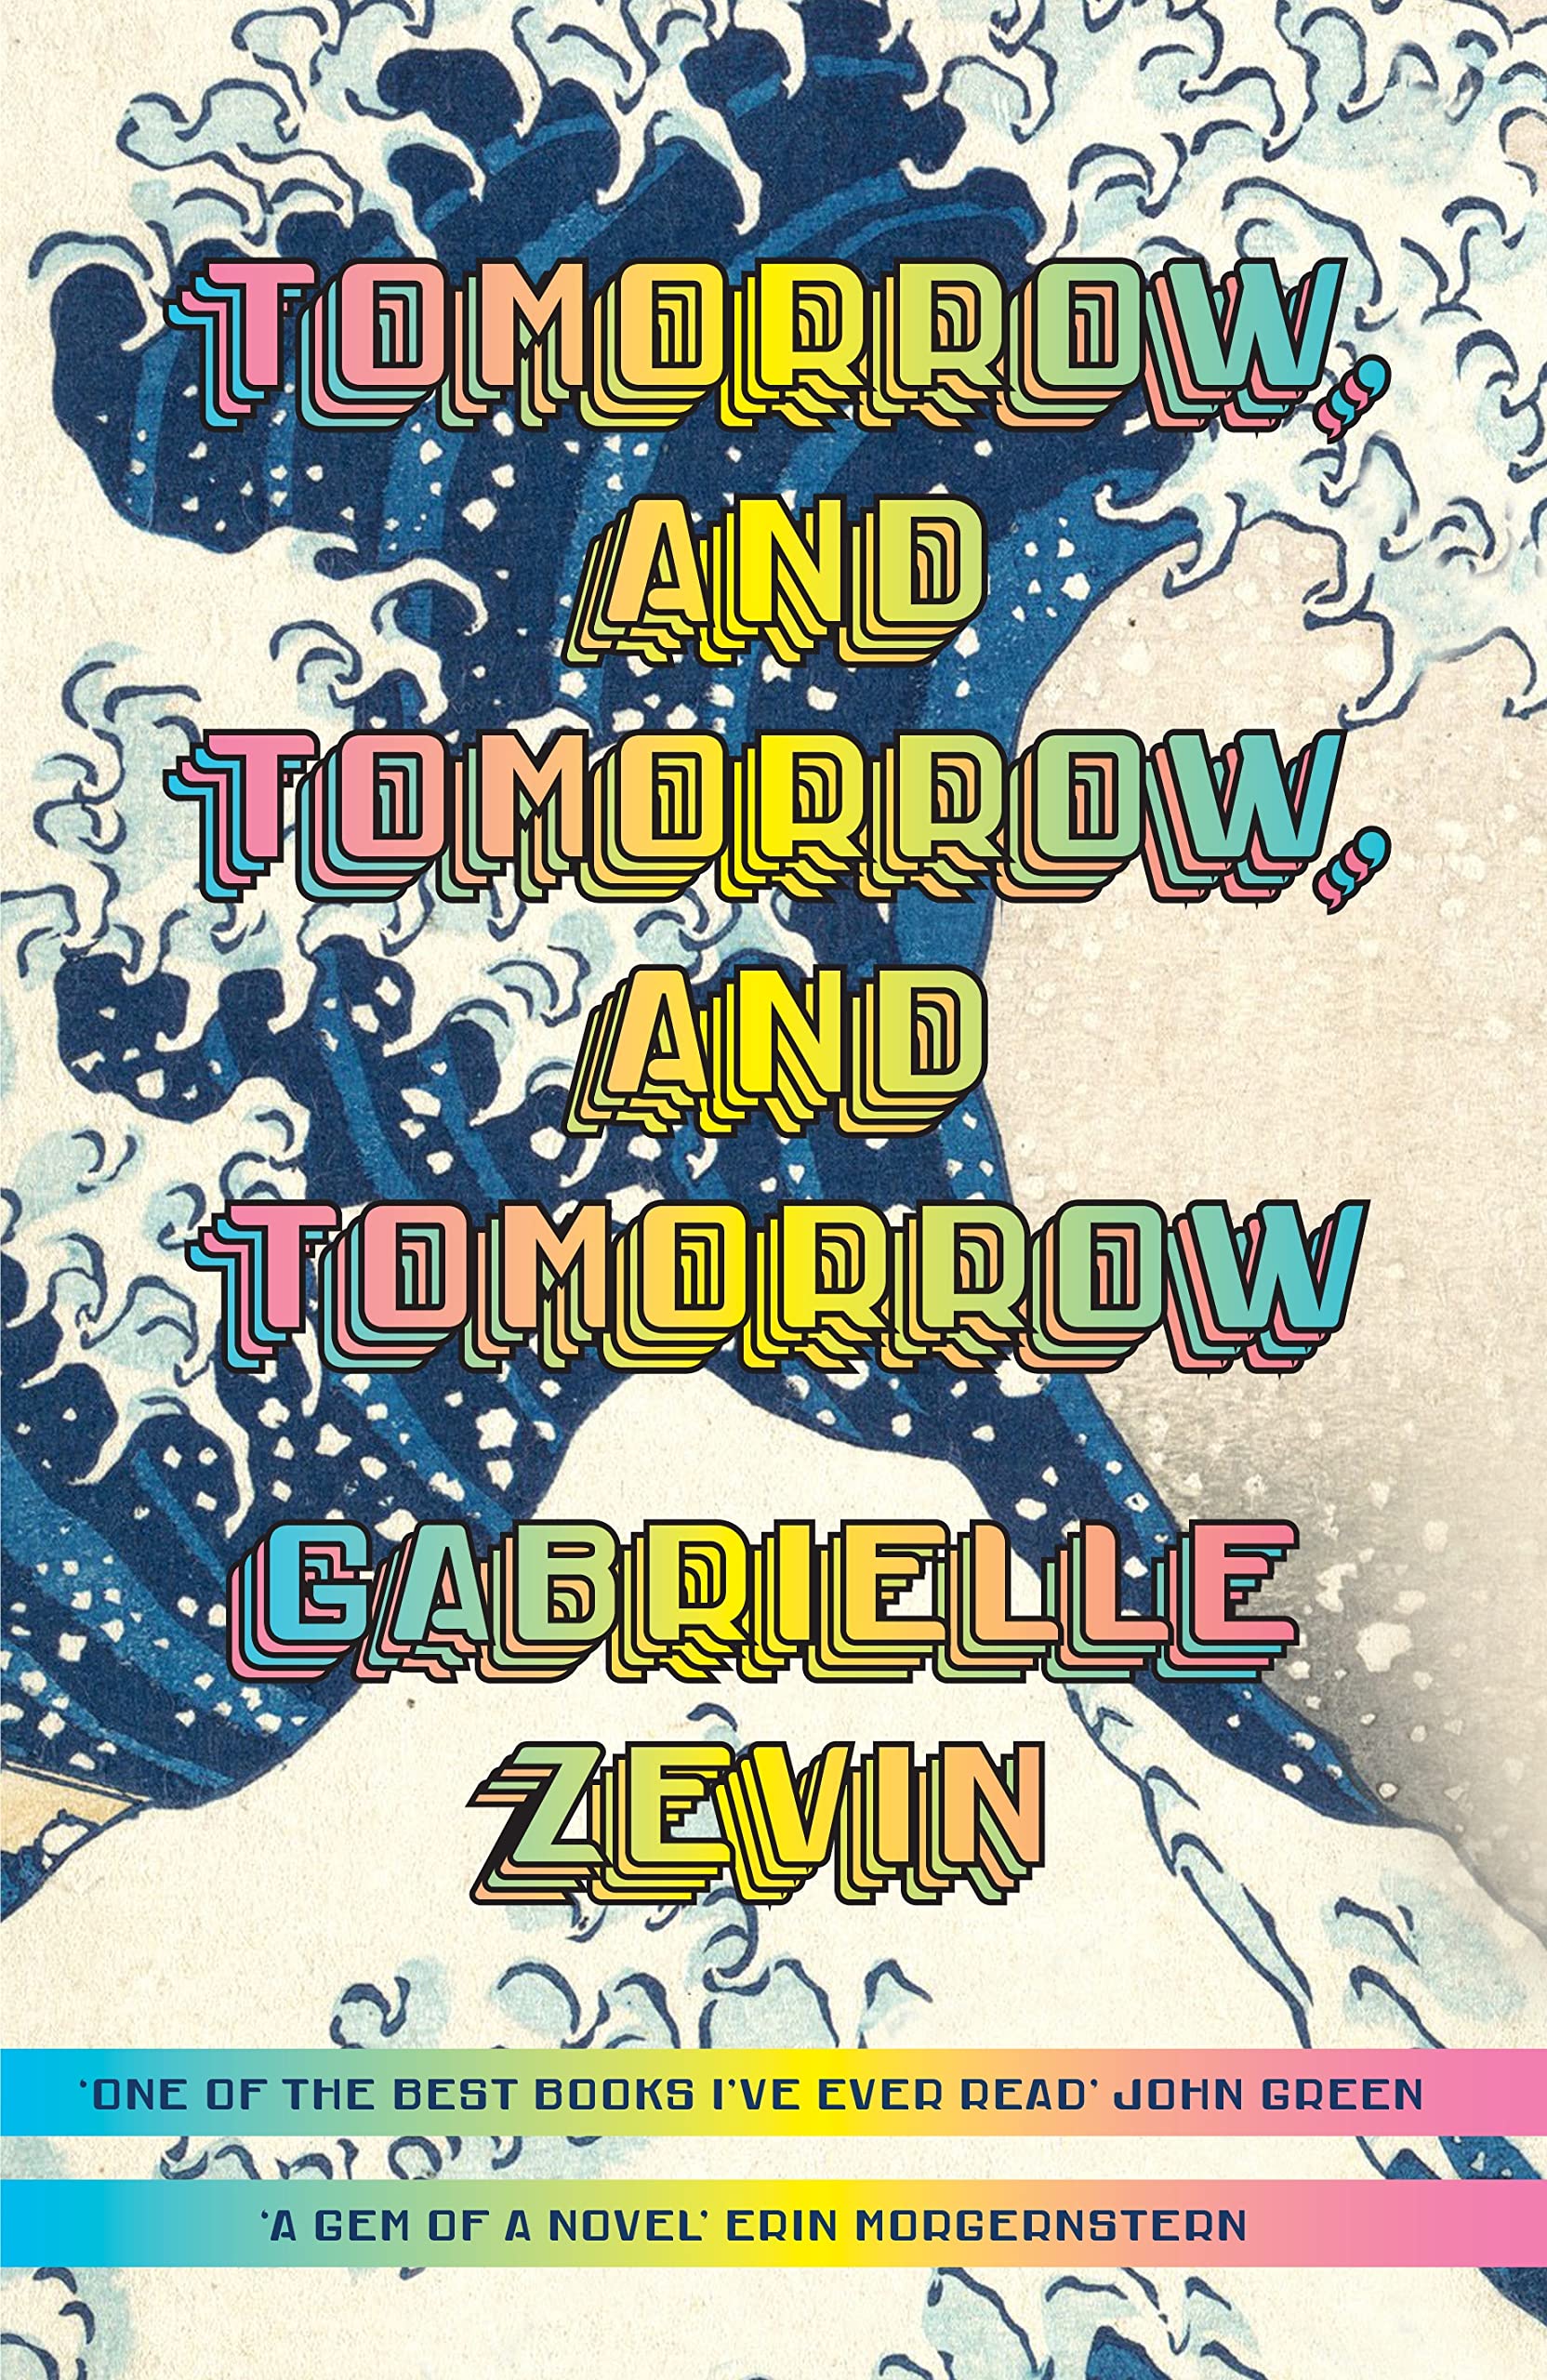 Tomorrow and Tomorrow and Tomorrow by Gabrielle Zevin